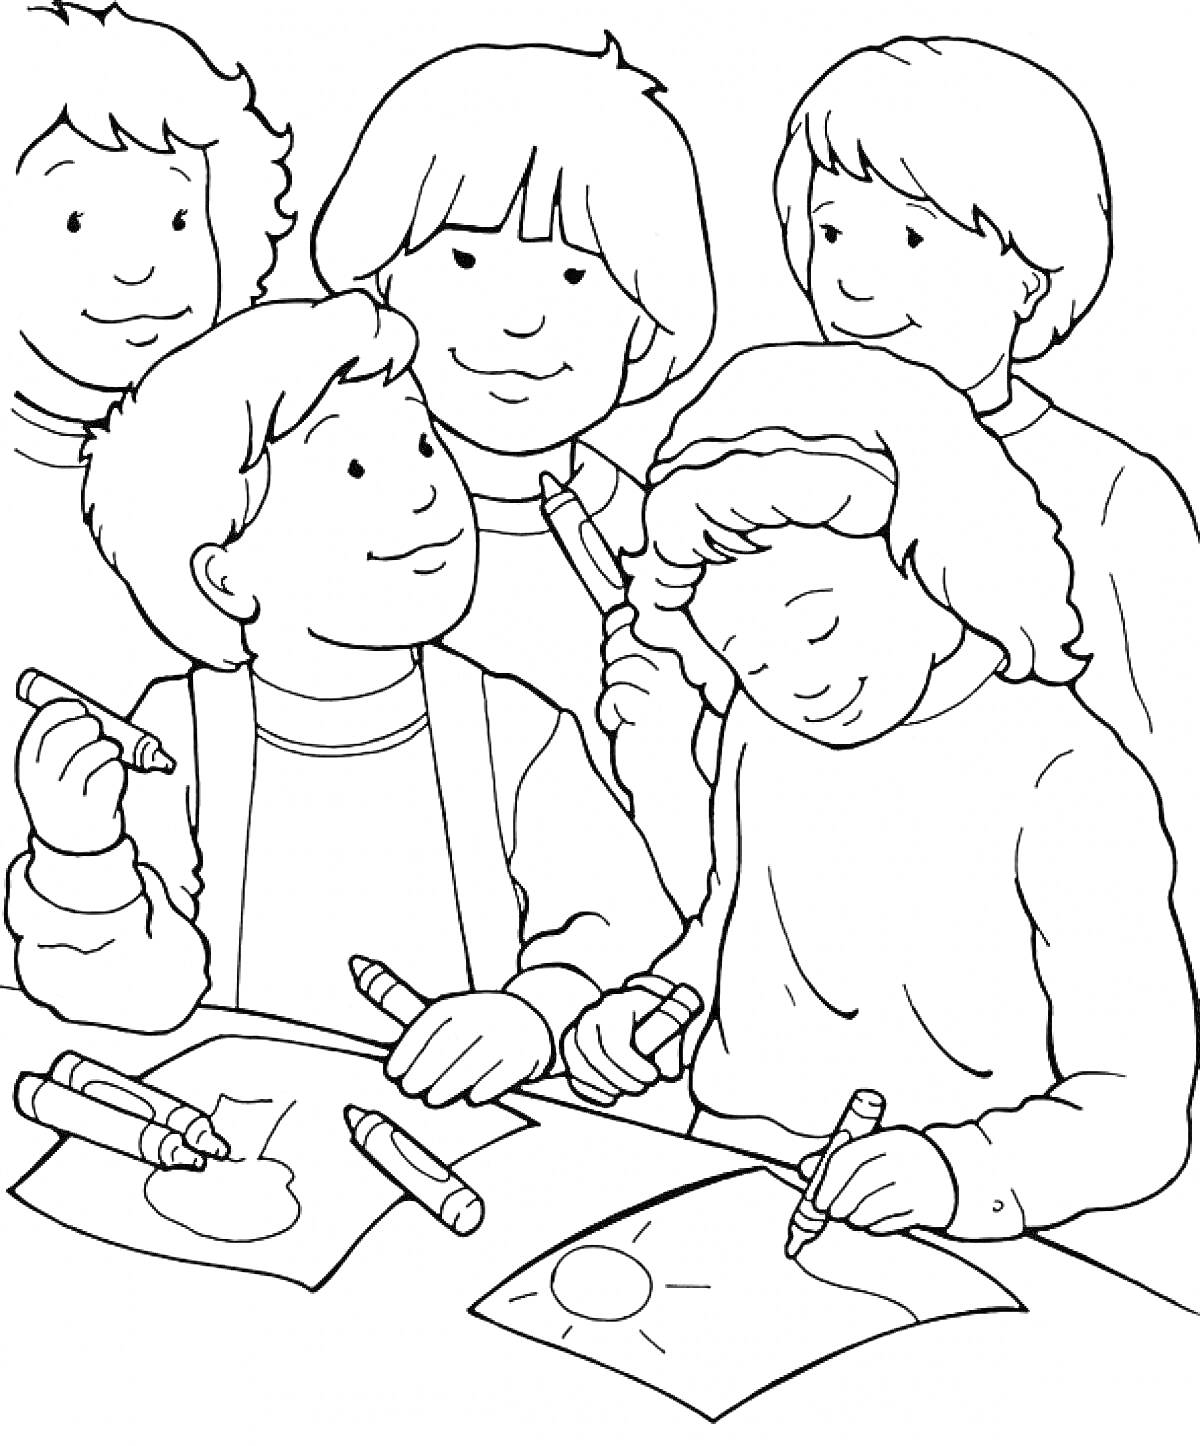 Дети, рисующие за столом мелками, с улыбками на лицах